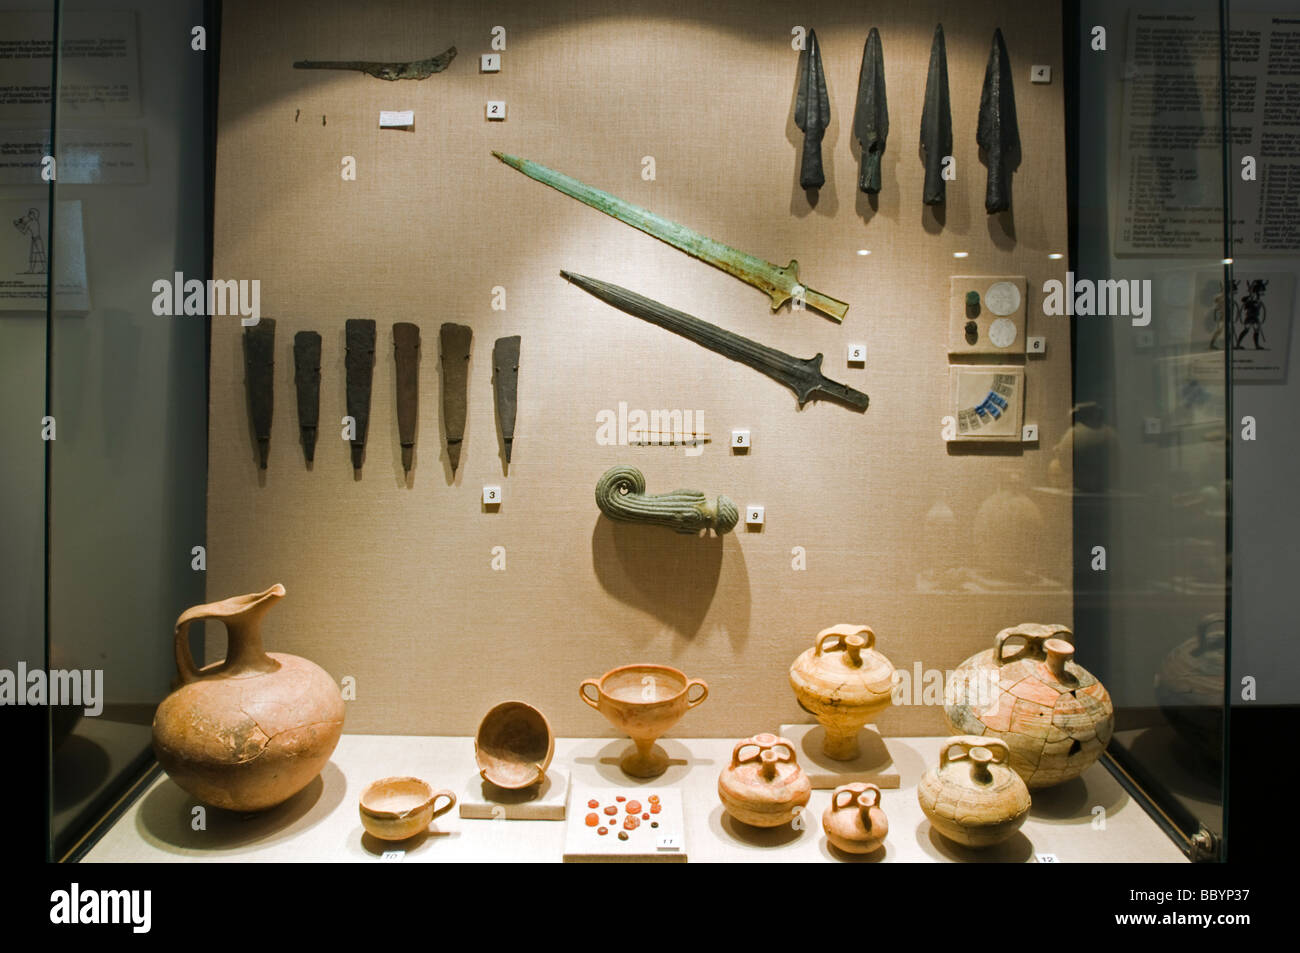 Les épées et les céramiques trouvés en Bronz Uluburun, épaves de l'époque plus ancienne épave jamais trouvé, Musée d'archéologie sous-marine de Bodrum Turquie Banque D'Images